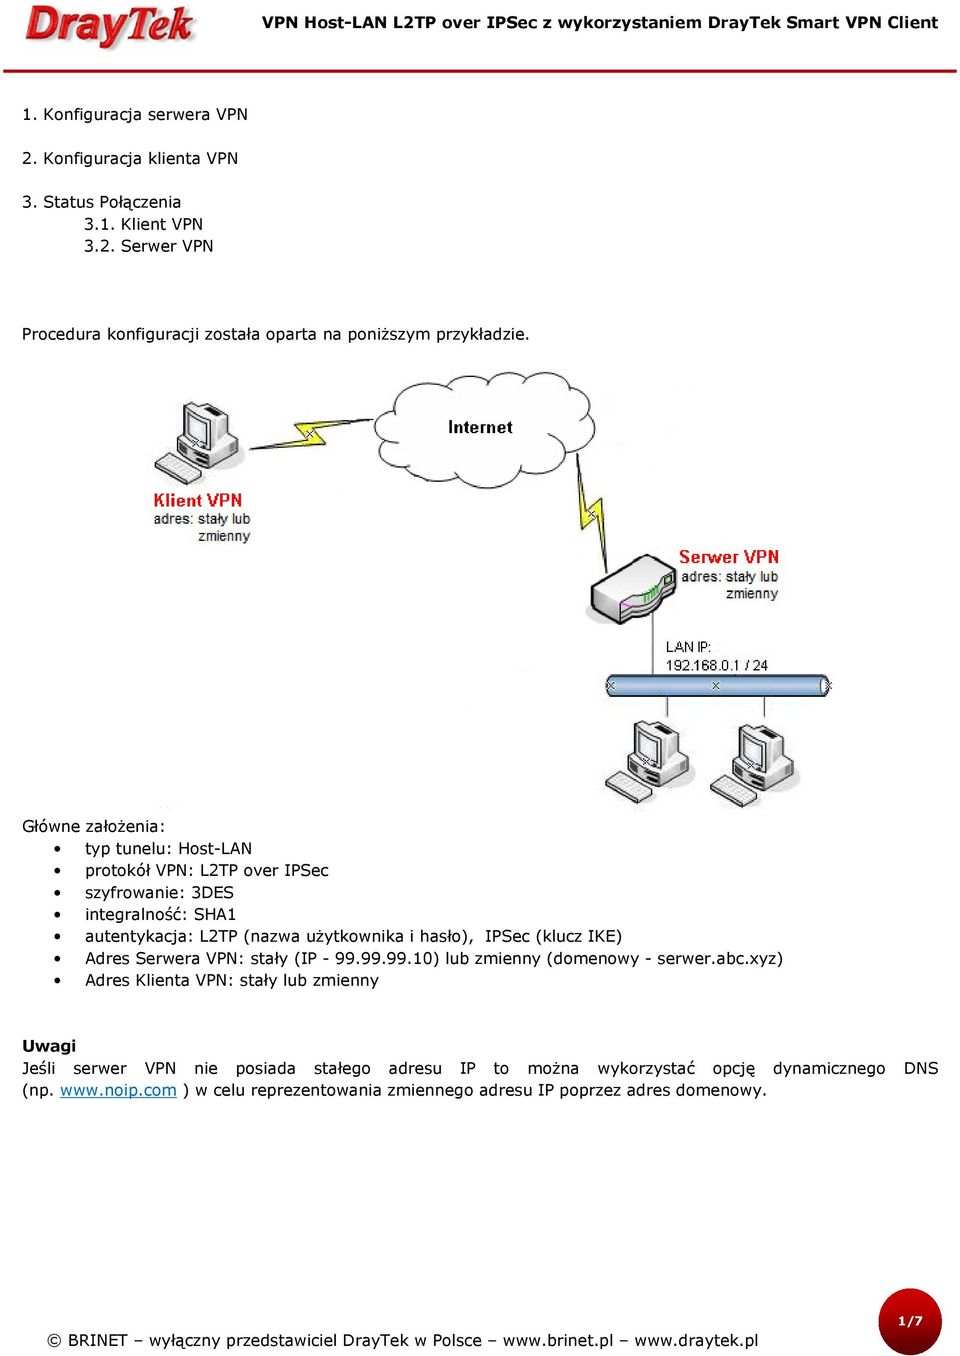 (klucz IKE) Adres Serwera VPN: stały (IP - 99.99.99.10) lub zmienny (domenowy - serwer.abc.